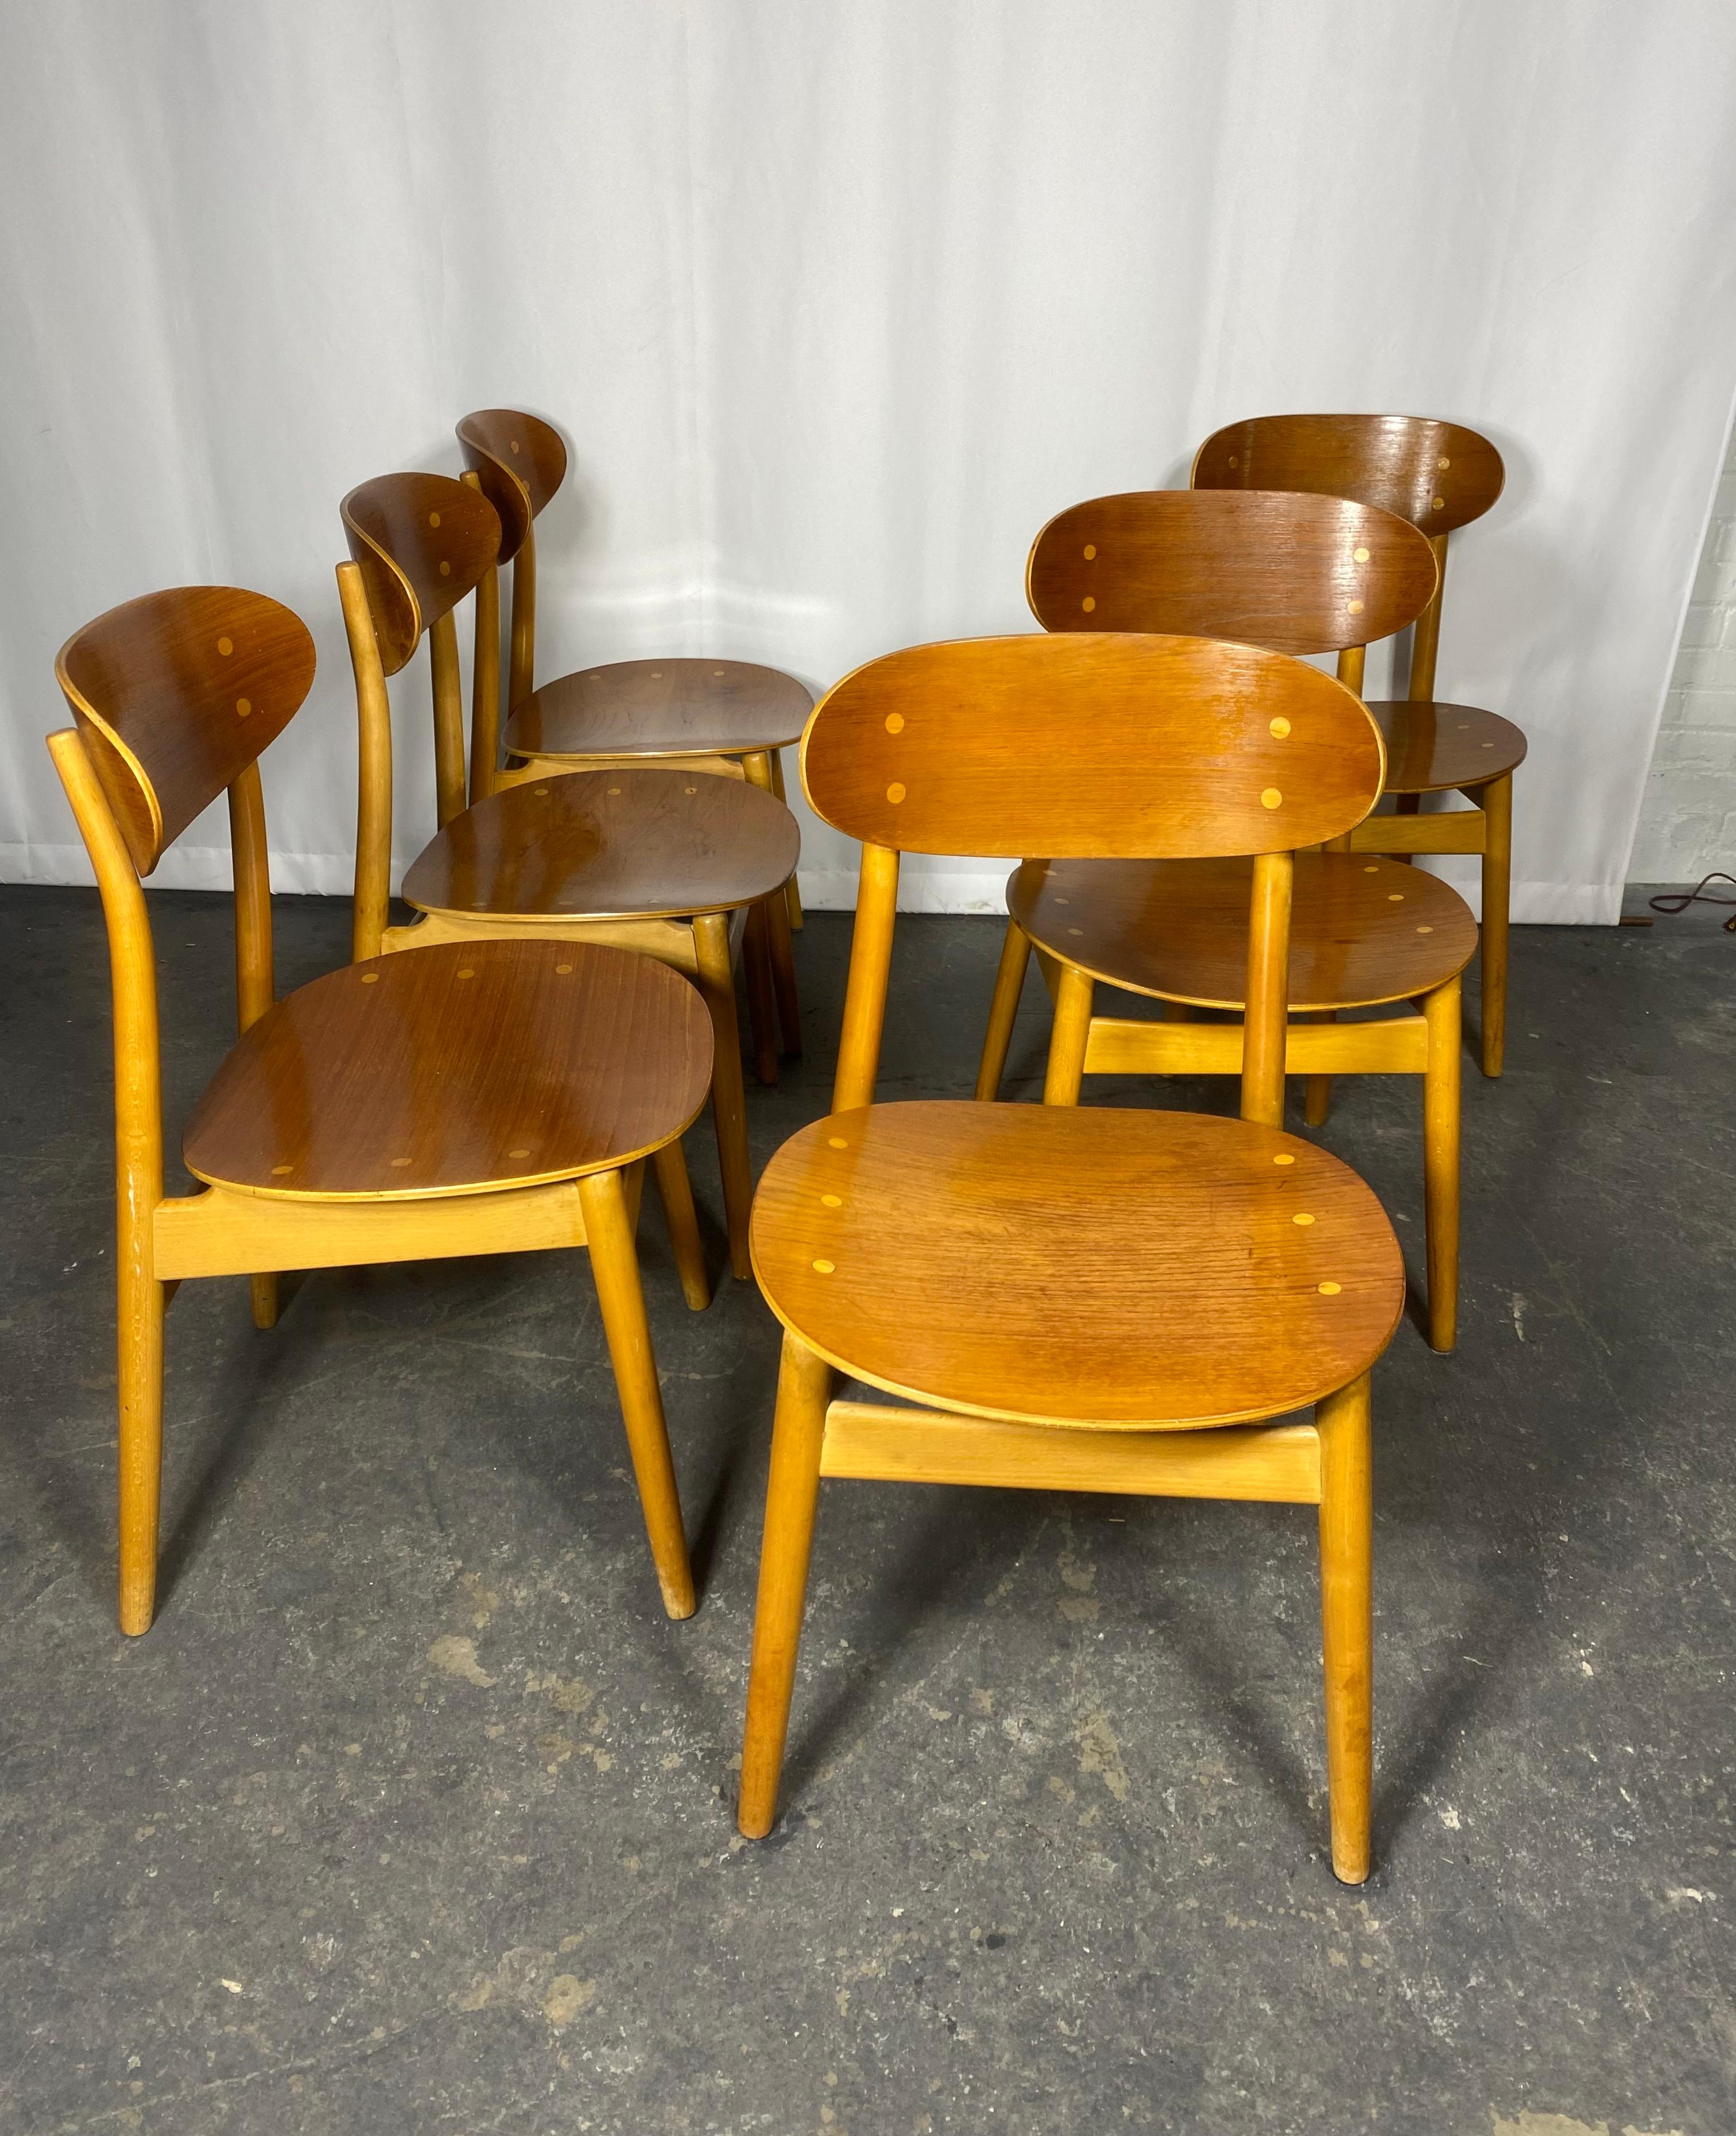 Ces chaises ont été conçues par Sven Erik Fryklund et fabriquées par la manufacture suédoise Hagafors Stolfabrik dans les années 1960. Le cadre est en bois de hêtre, l'assise et le dossier sont en teck cintré. Les chaises sont très bien conçues,